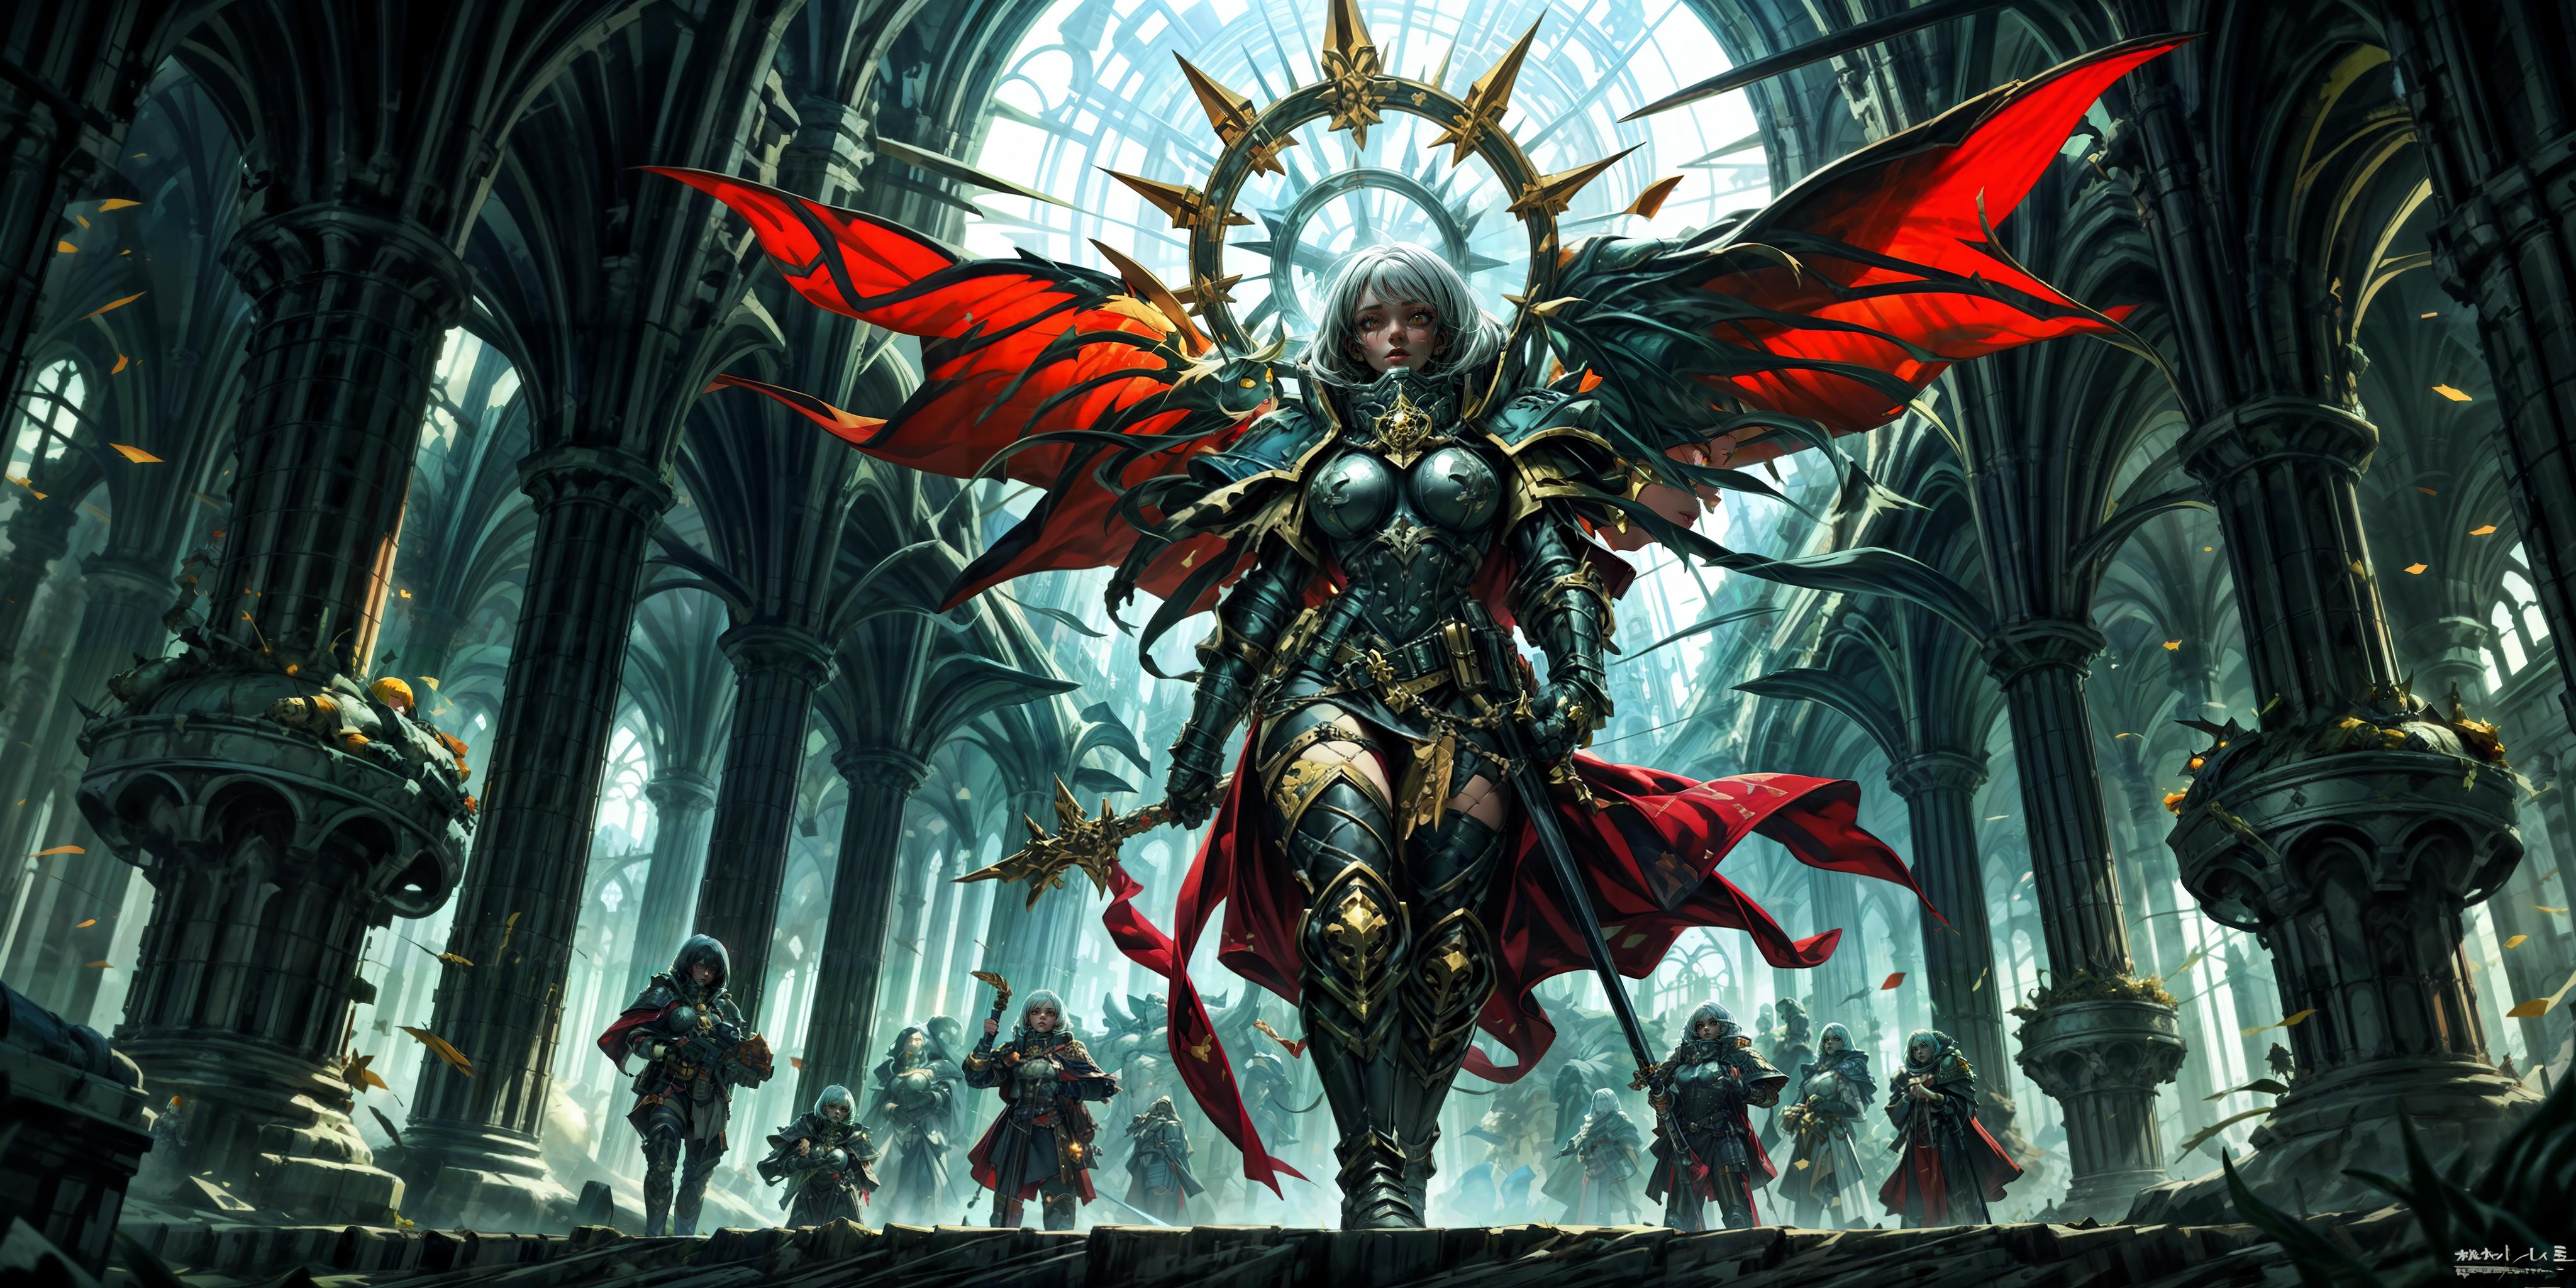 Warhammer Adeptus Sororitas image by Dercius